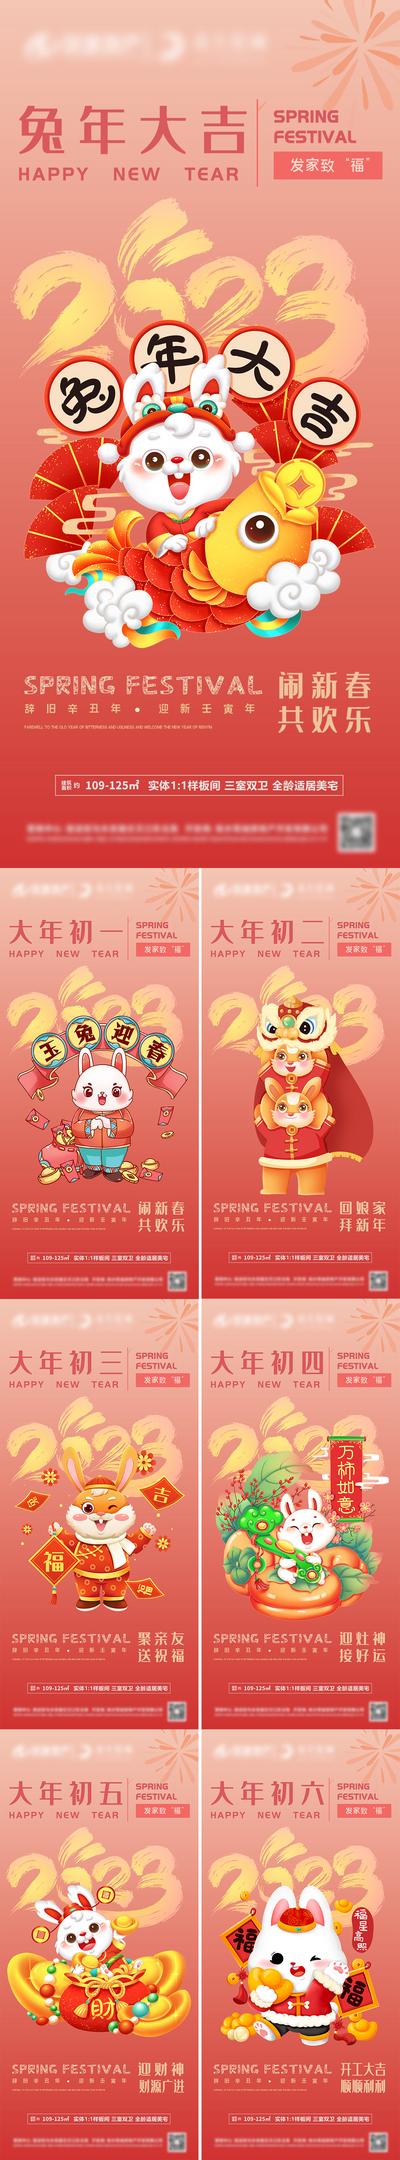 南门网 海报 房地产 中国传统节日 春节 兔年 年俗 插画 系列